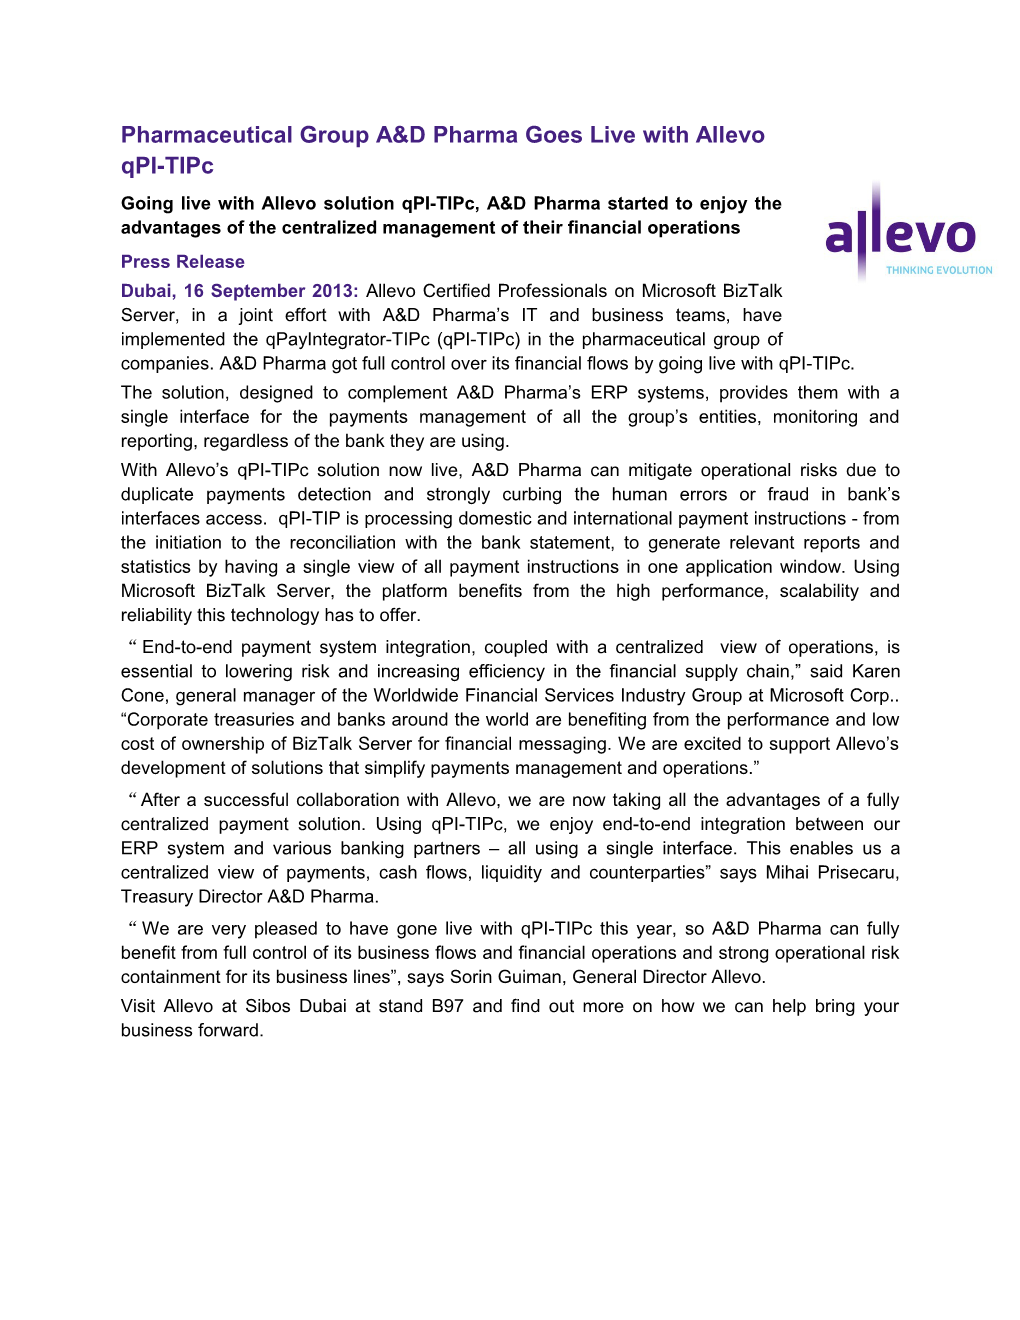 Allevo Press Release Pharma